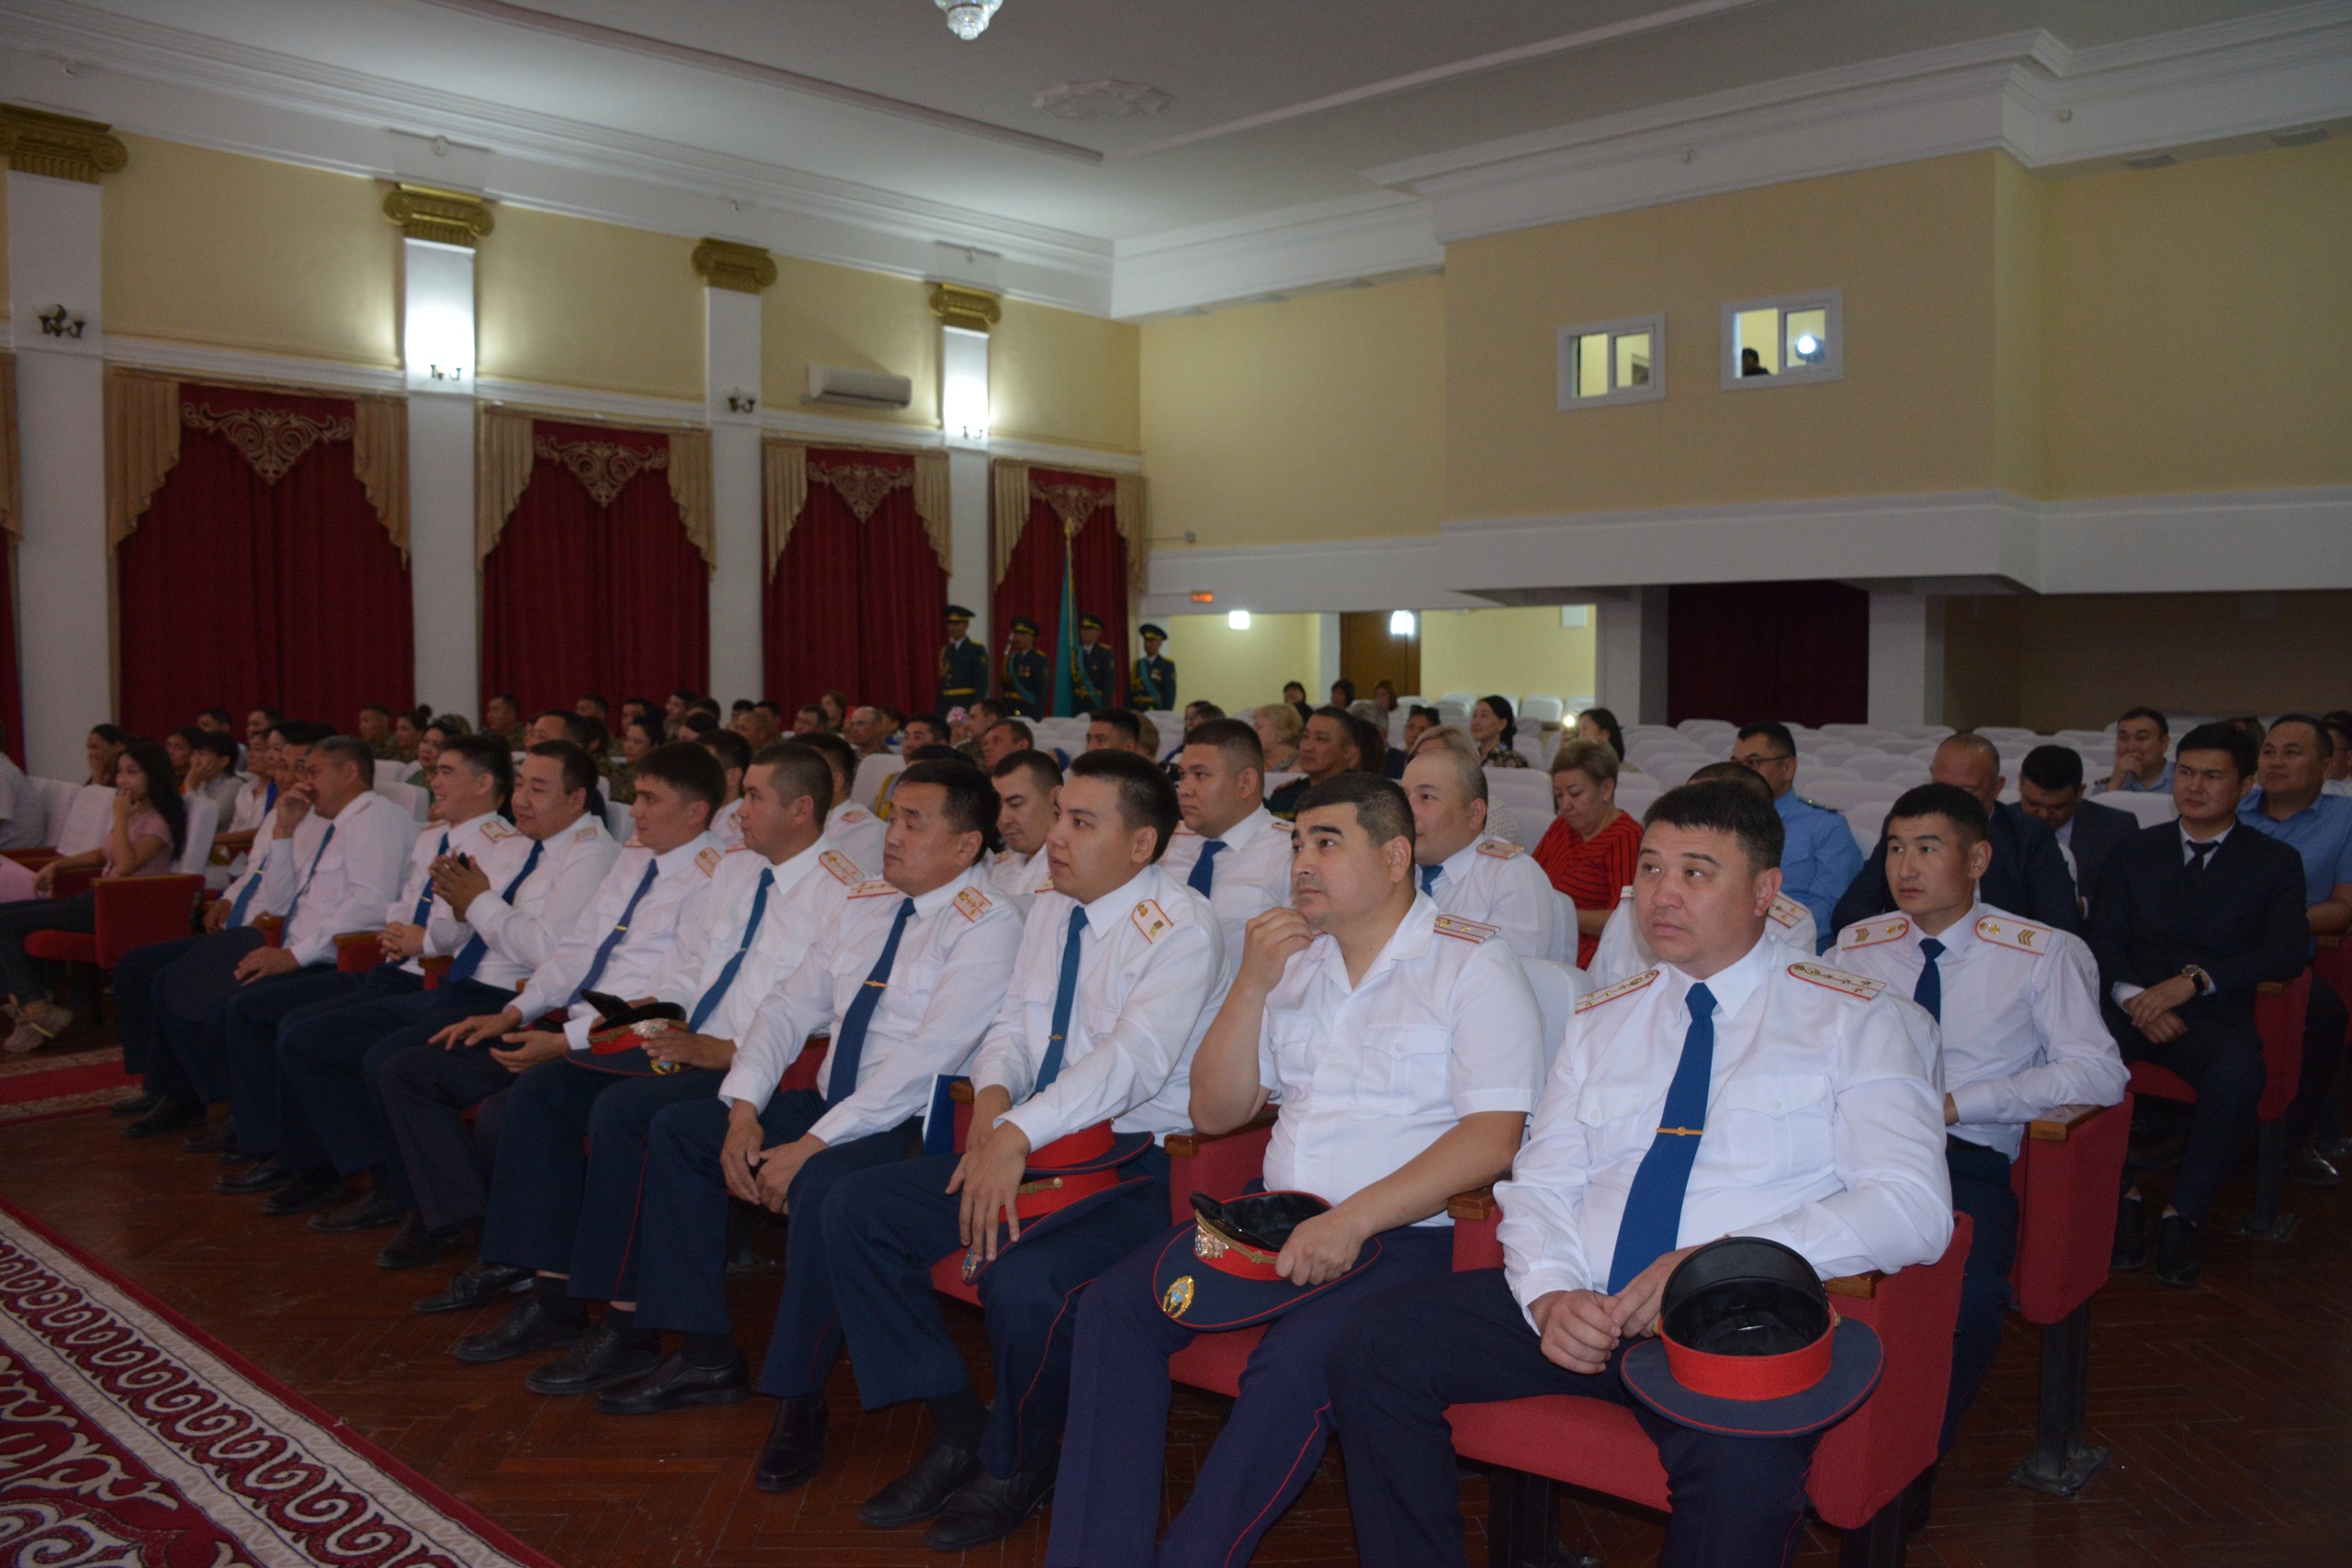 Сегодня в ГДК состоялось торжественное мероприятие, посвященное празднованию 30-летия казахстанской полиции и Дня государственных служащих.